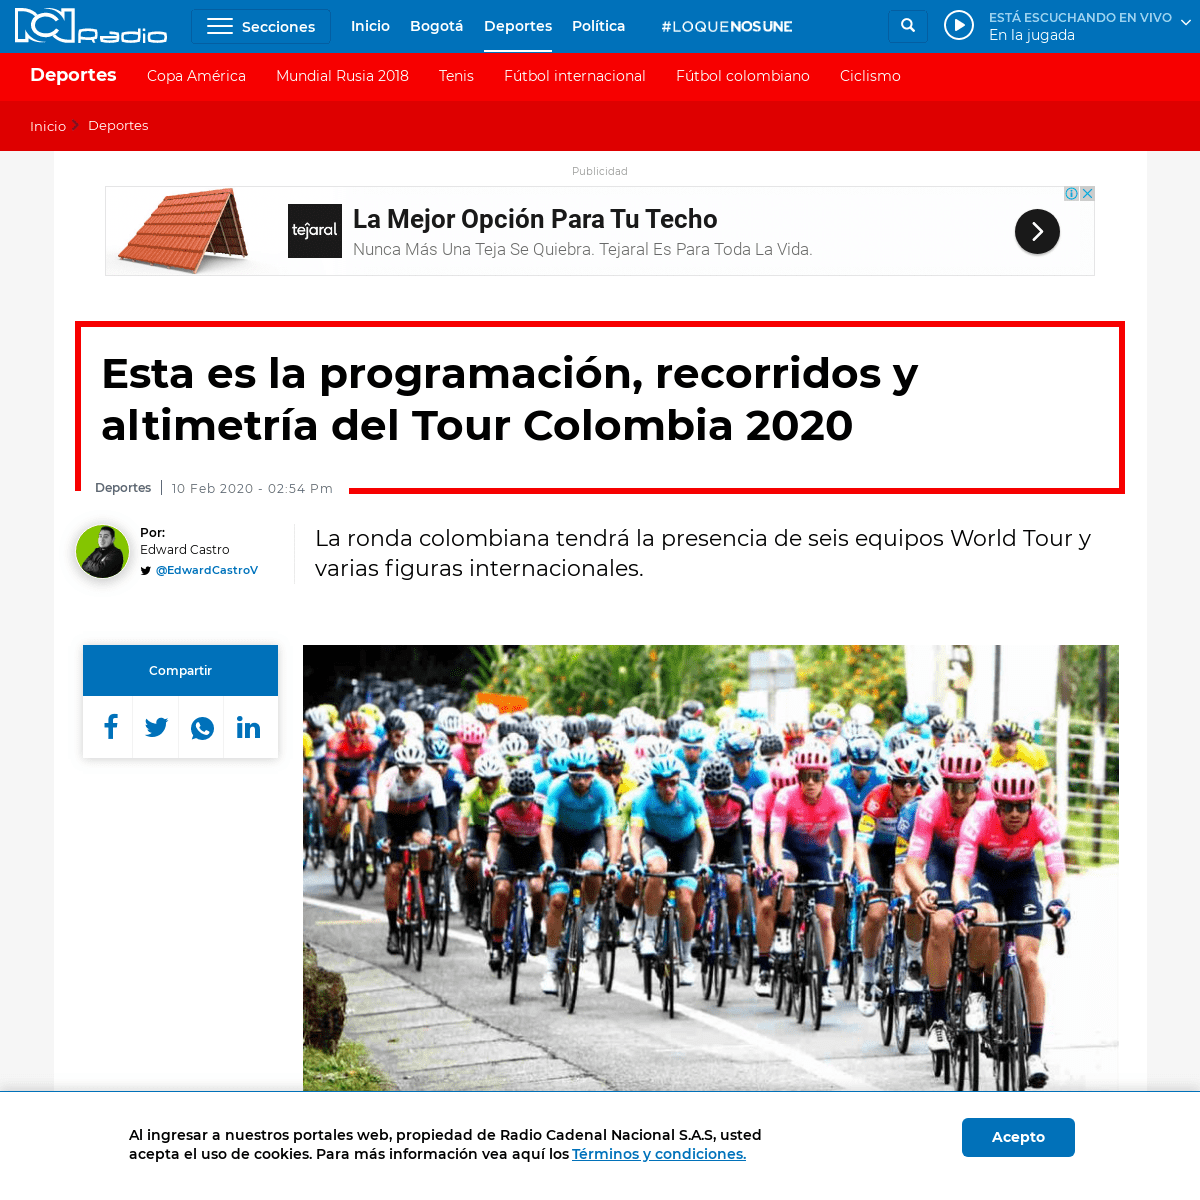 A complete backup of www.rcnradio.com/deportes/esta-es-la-programacion-recorridos-y-altimetria-del-tour-colombia-2020